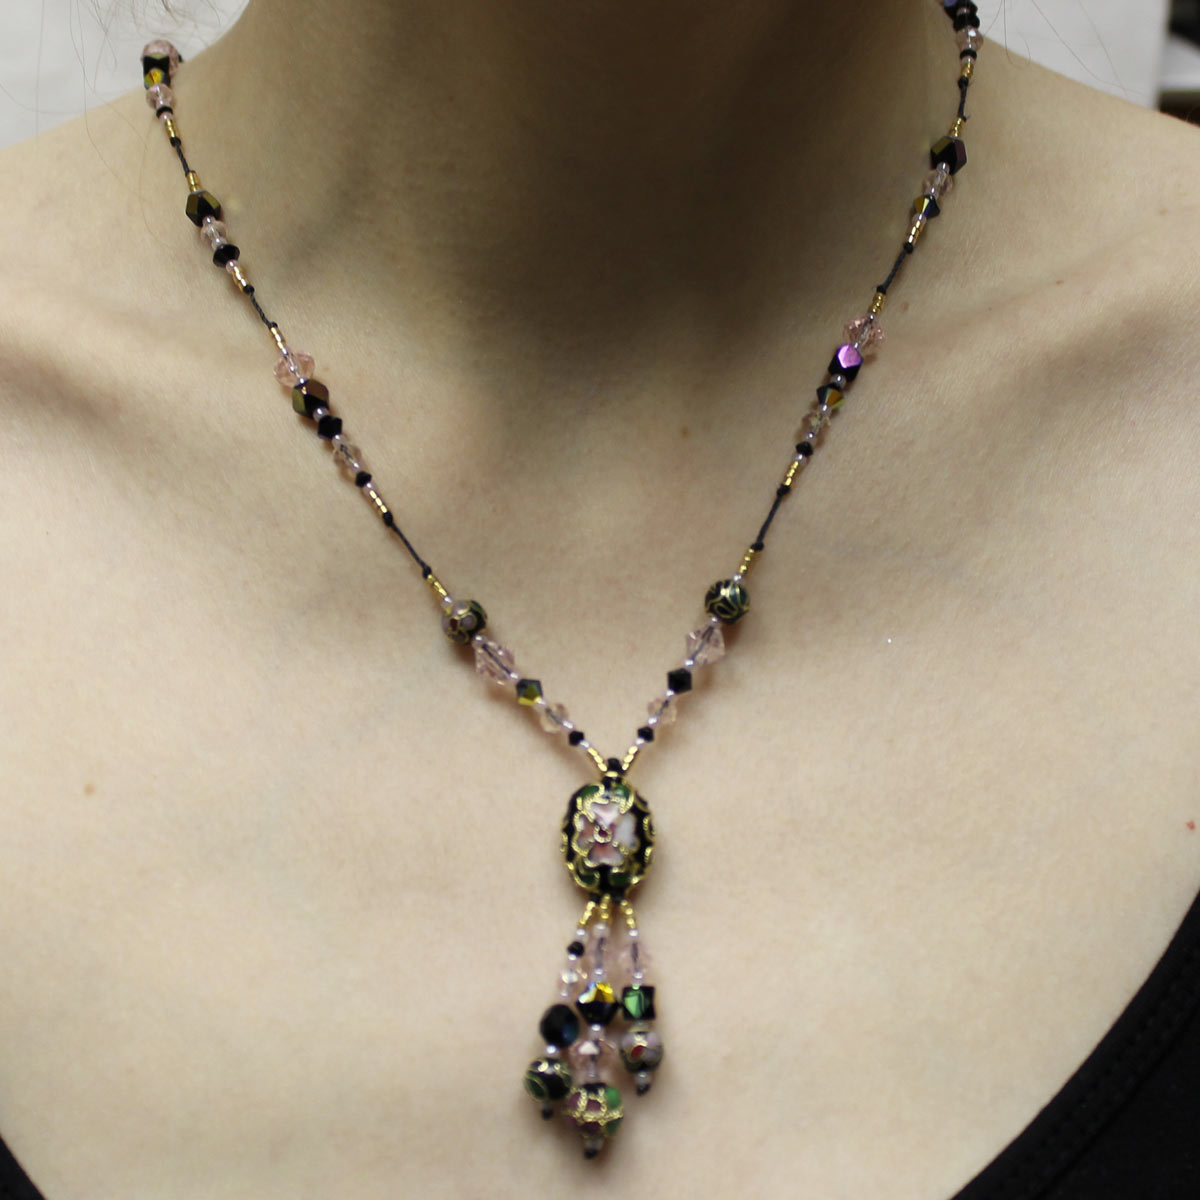 Cloisonné center bead, Cloisonné necklace, handmade crystal necklace, gold necklace, drop necklace